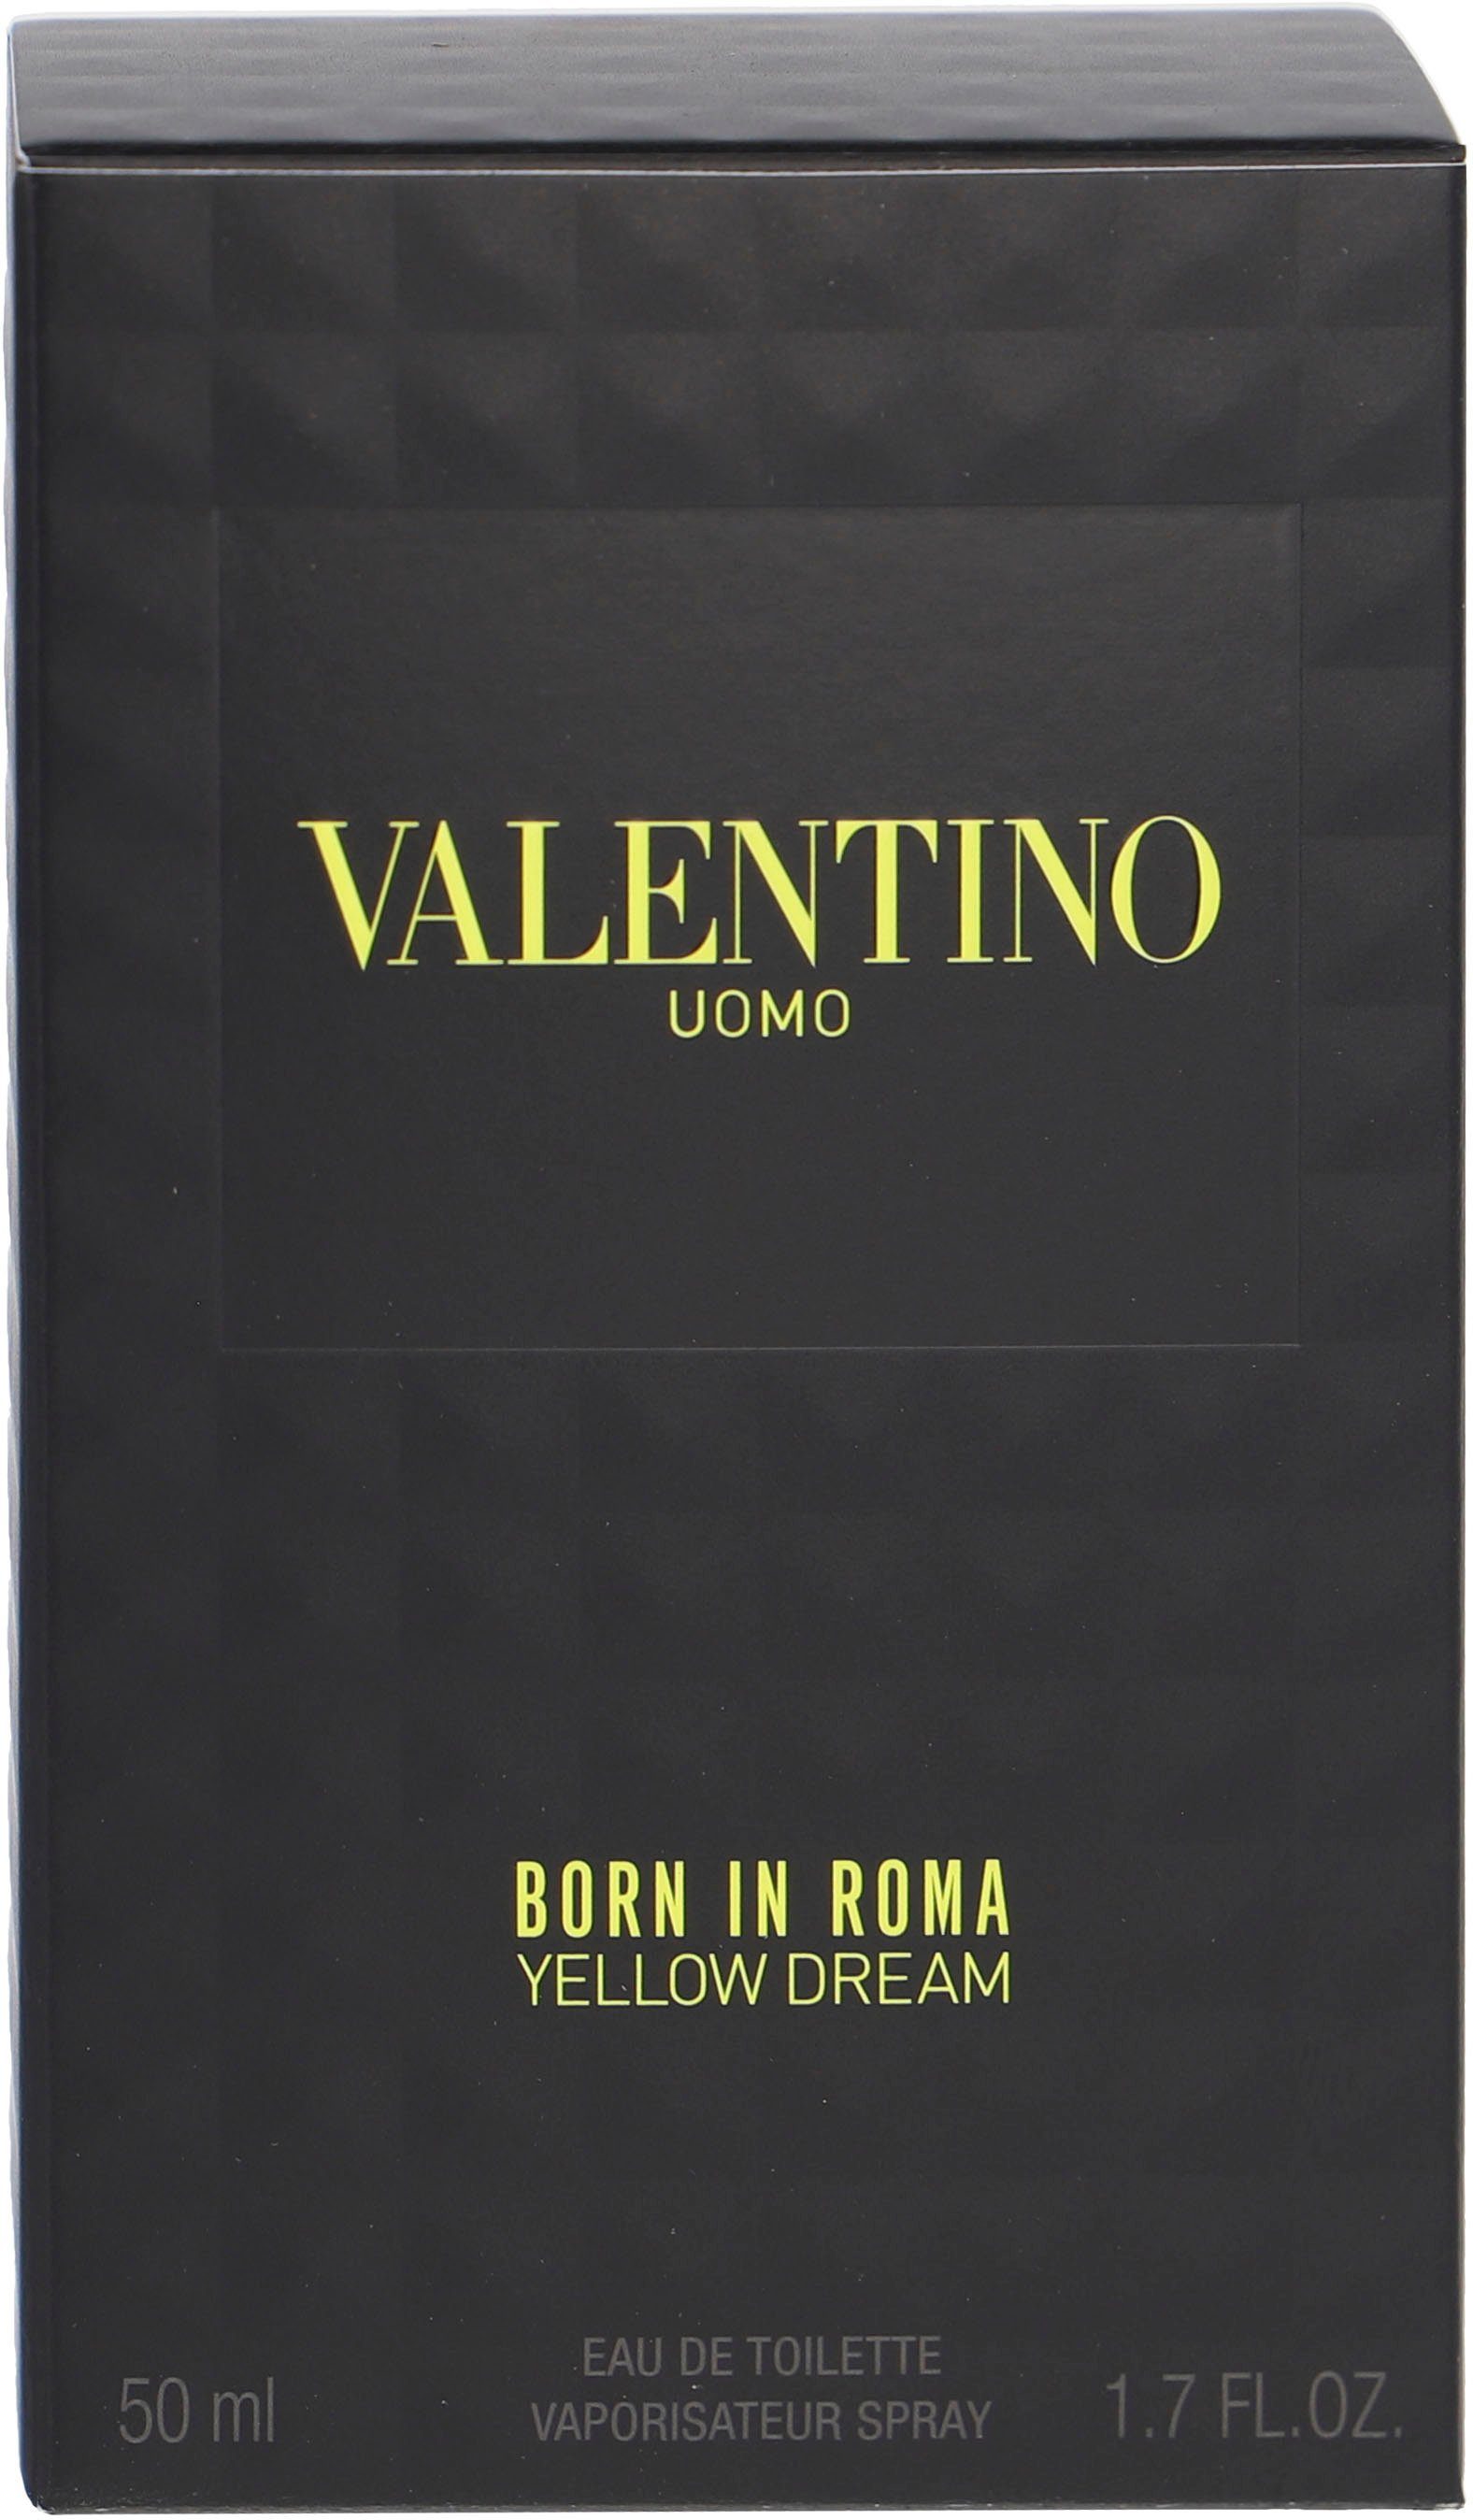 Uomo In Roma Valentino Born Dream de Yellow Toilette Eau